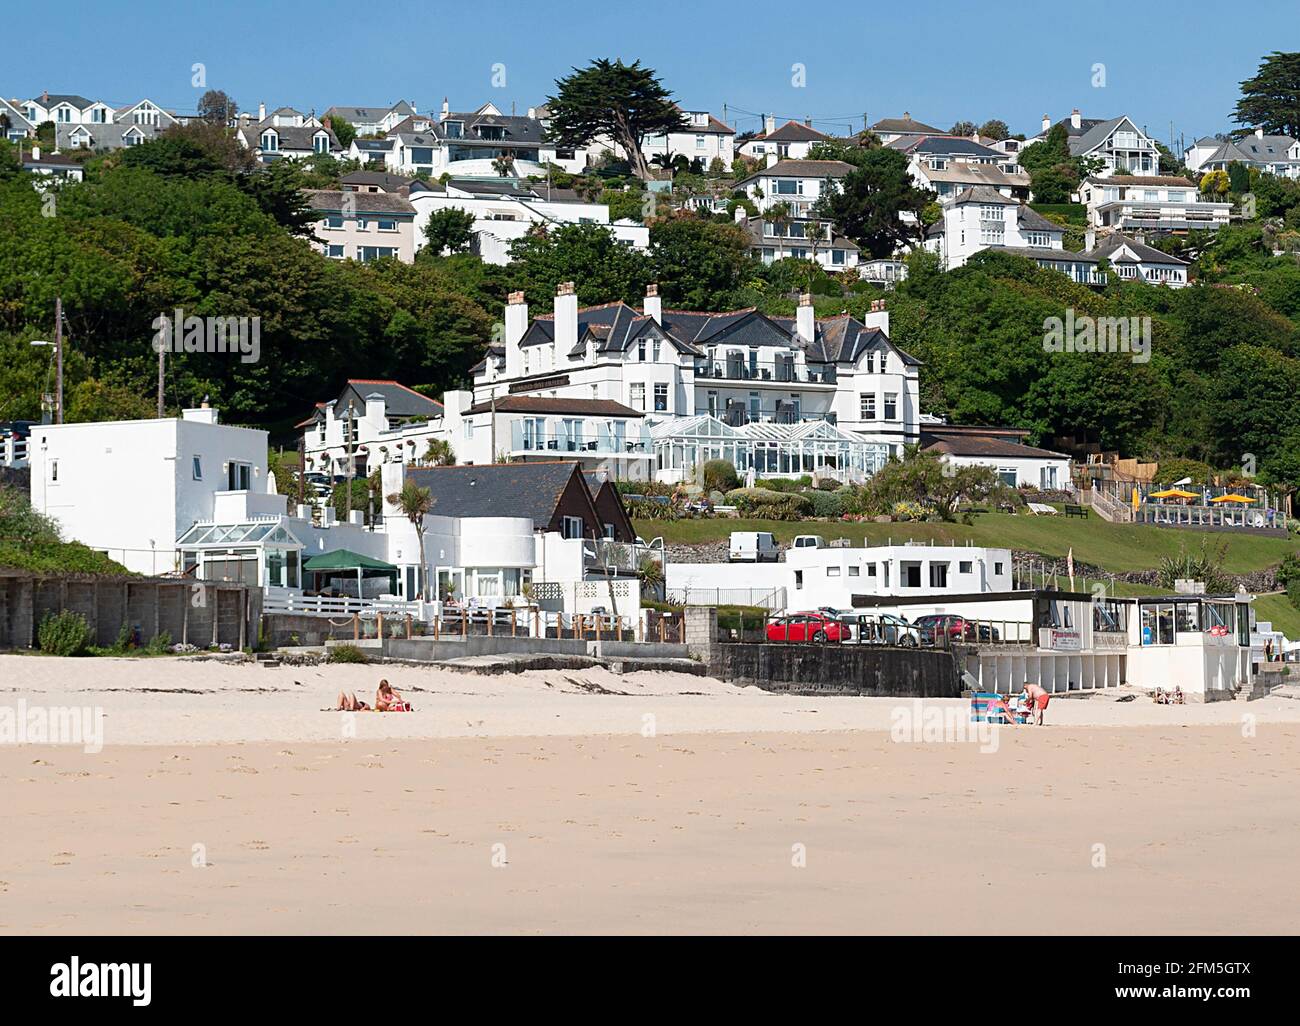 L'hôtel Carbis Bay donne sur la plage de carbis Bay, près de St ives, à Cornwall, en Angleterre, au Royaume-Uni. L'hôtel accueille le sommet du G7 en juin 2021 Banque D'Images